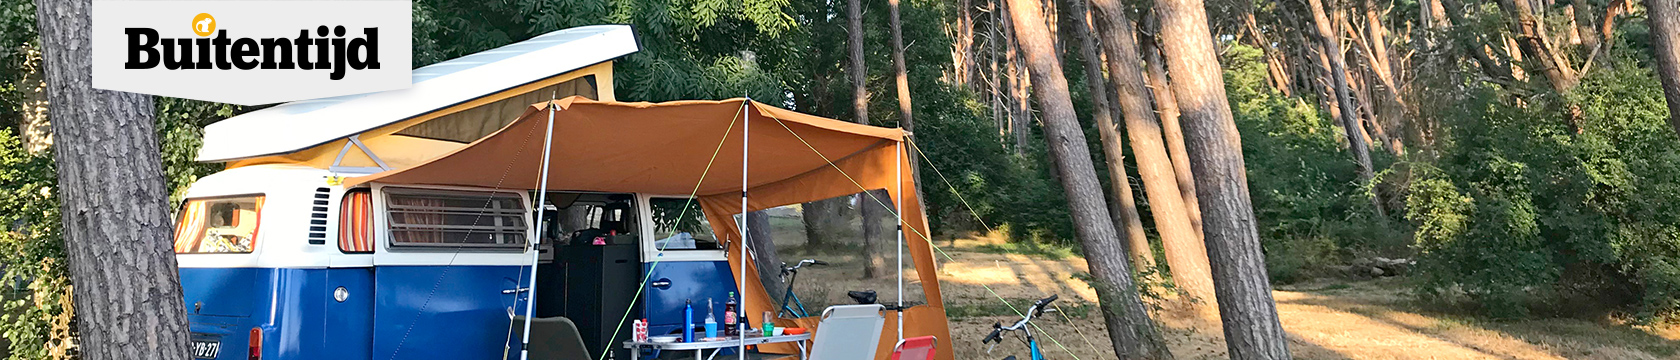 Ultieme vrijheid: kamperen met de camper 